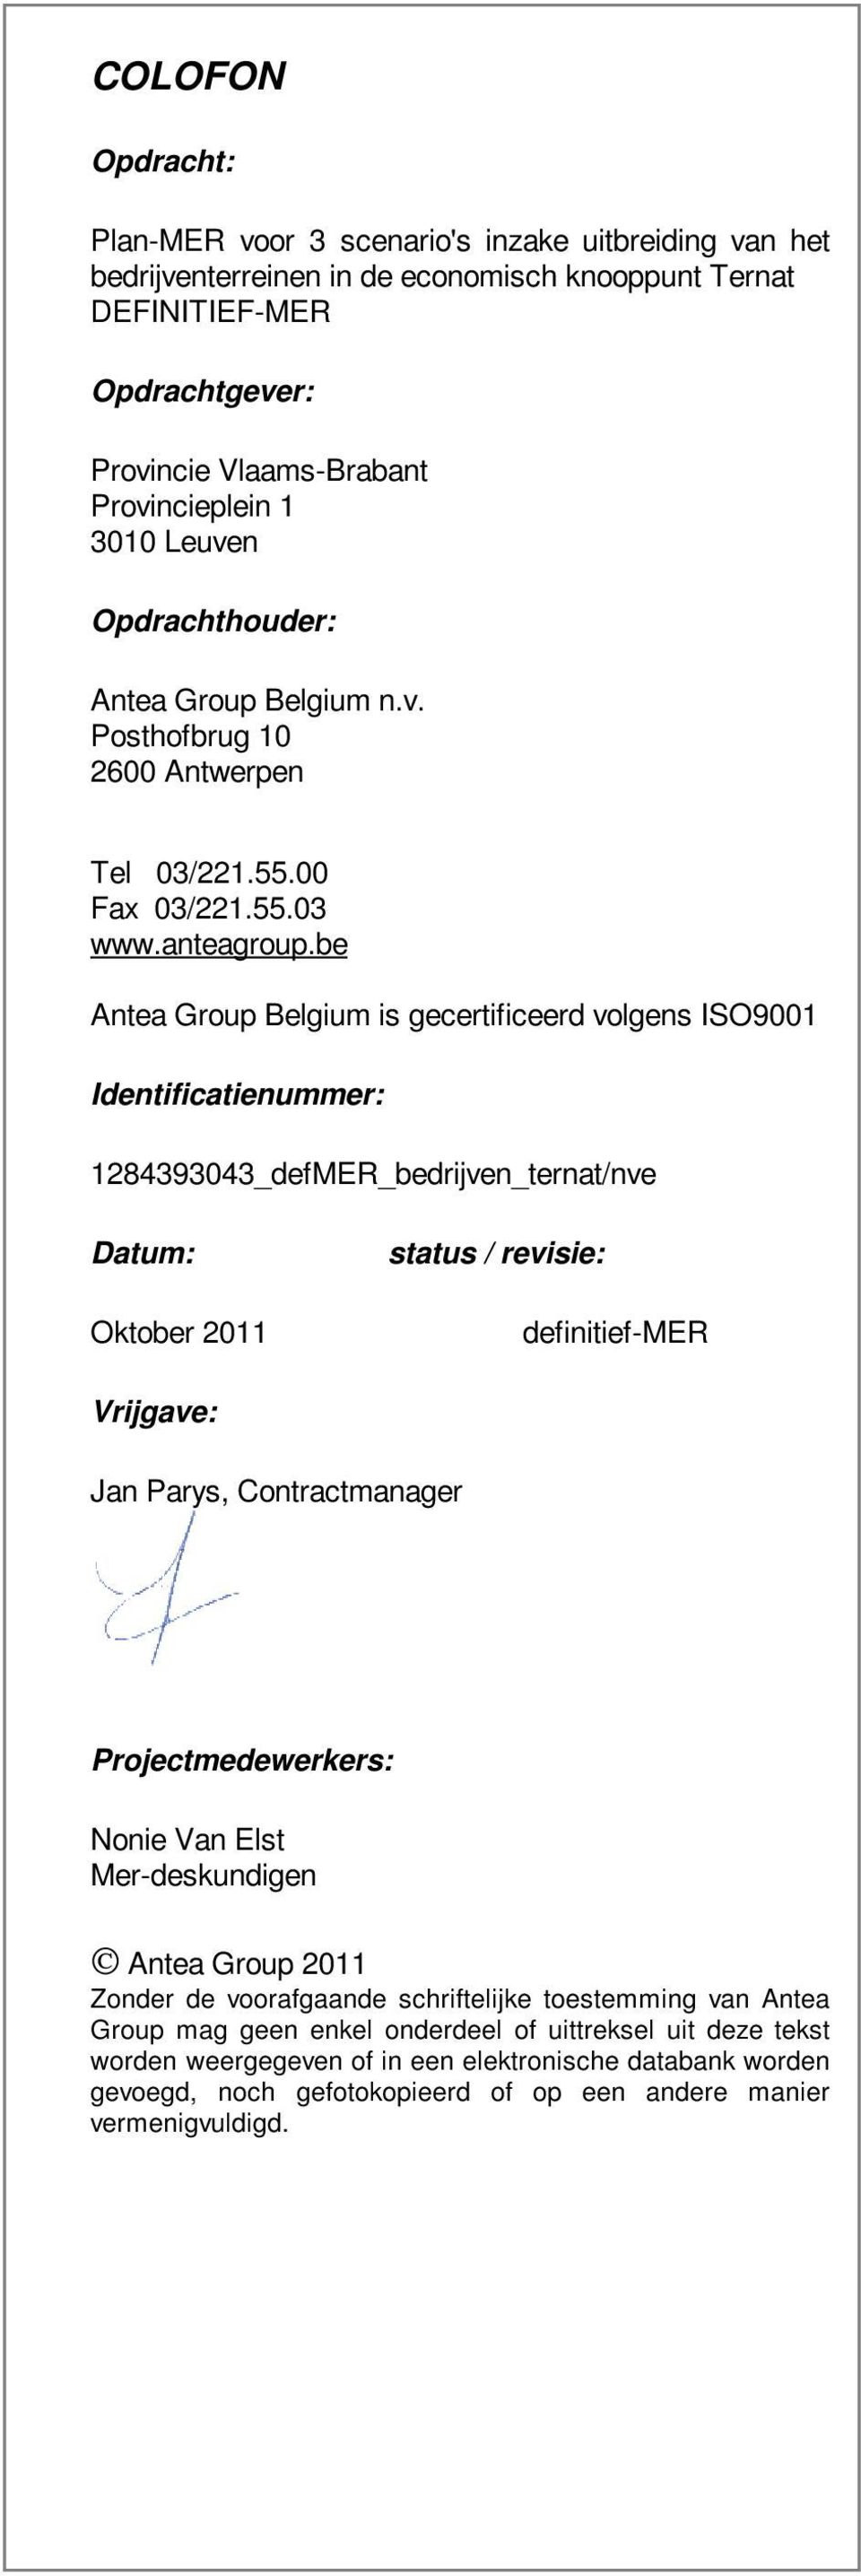 be Antea Group Belgium is gecertificeerd volgens ISO9001 Identificatienummer: 1284393043_defMER_bedrijven_ternat/nve Datum: Oktober 2011 status / revisie: definitief-mer Vrijgave: Jan Parys,